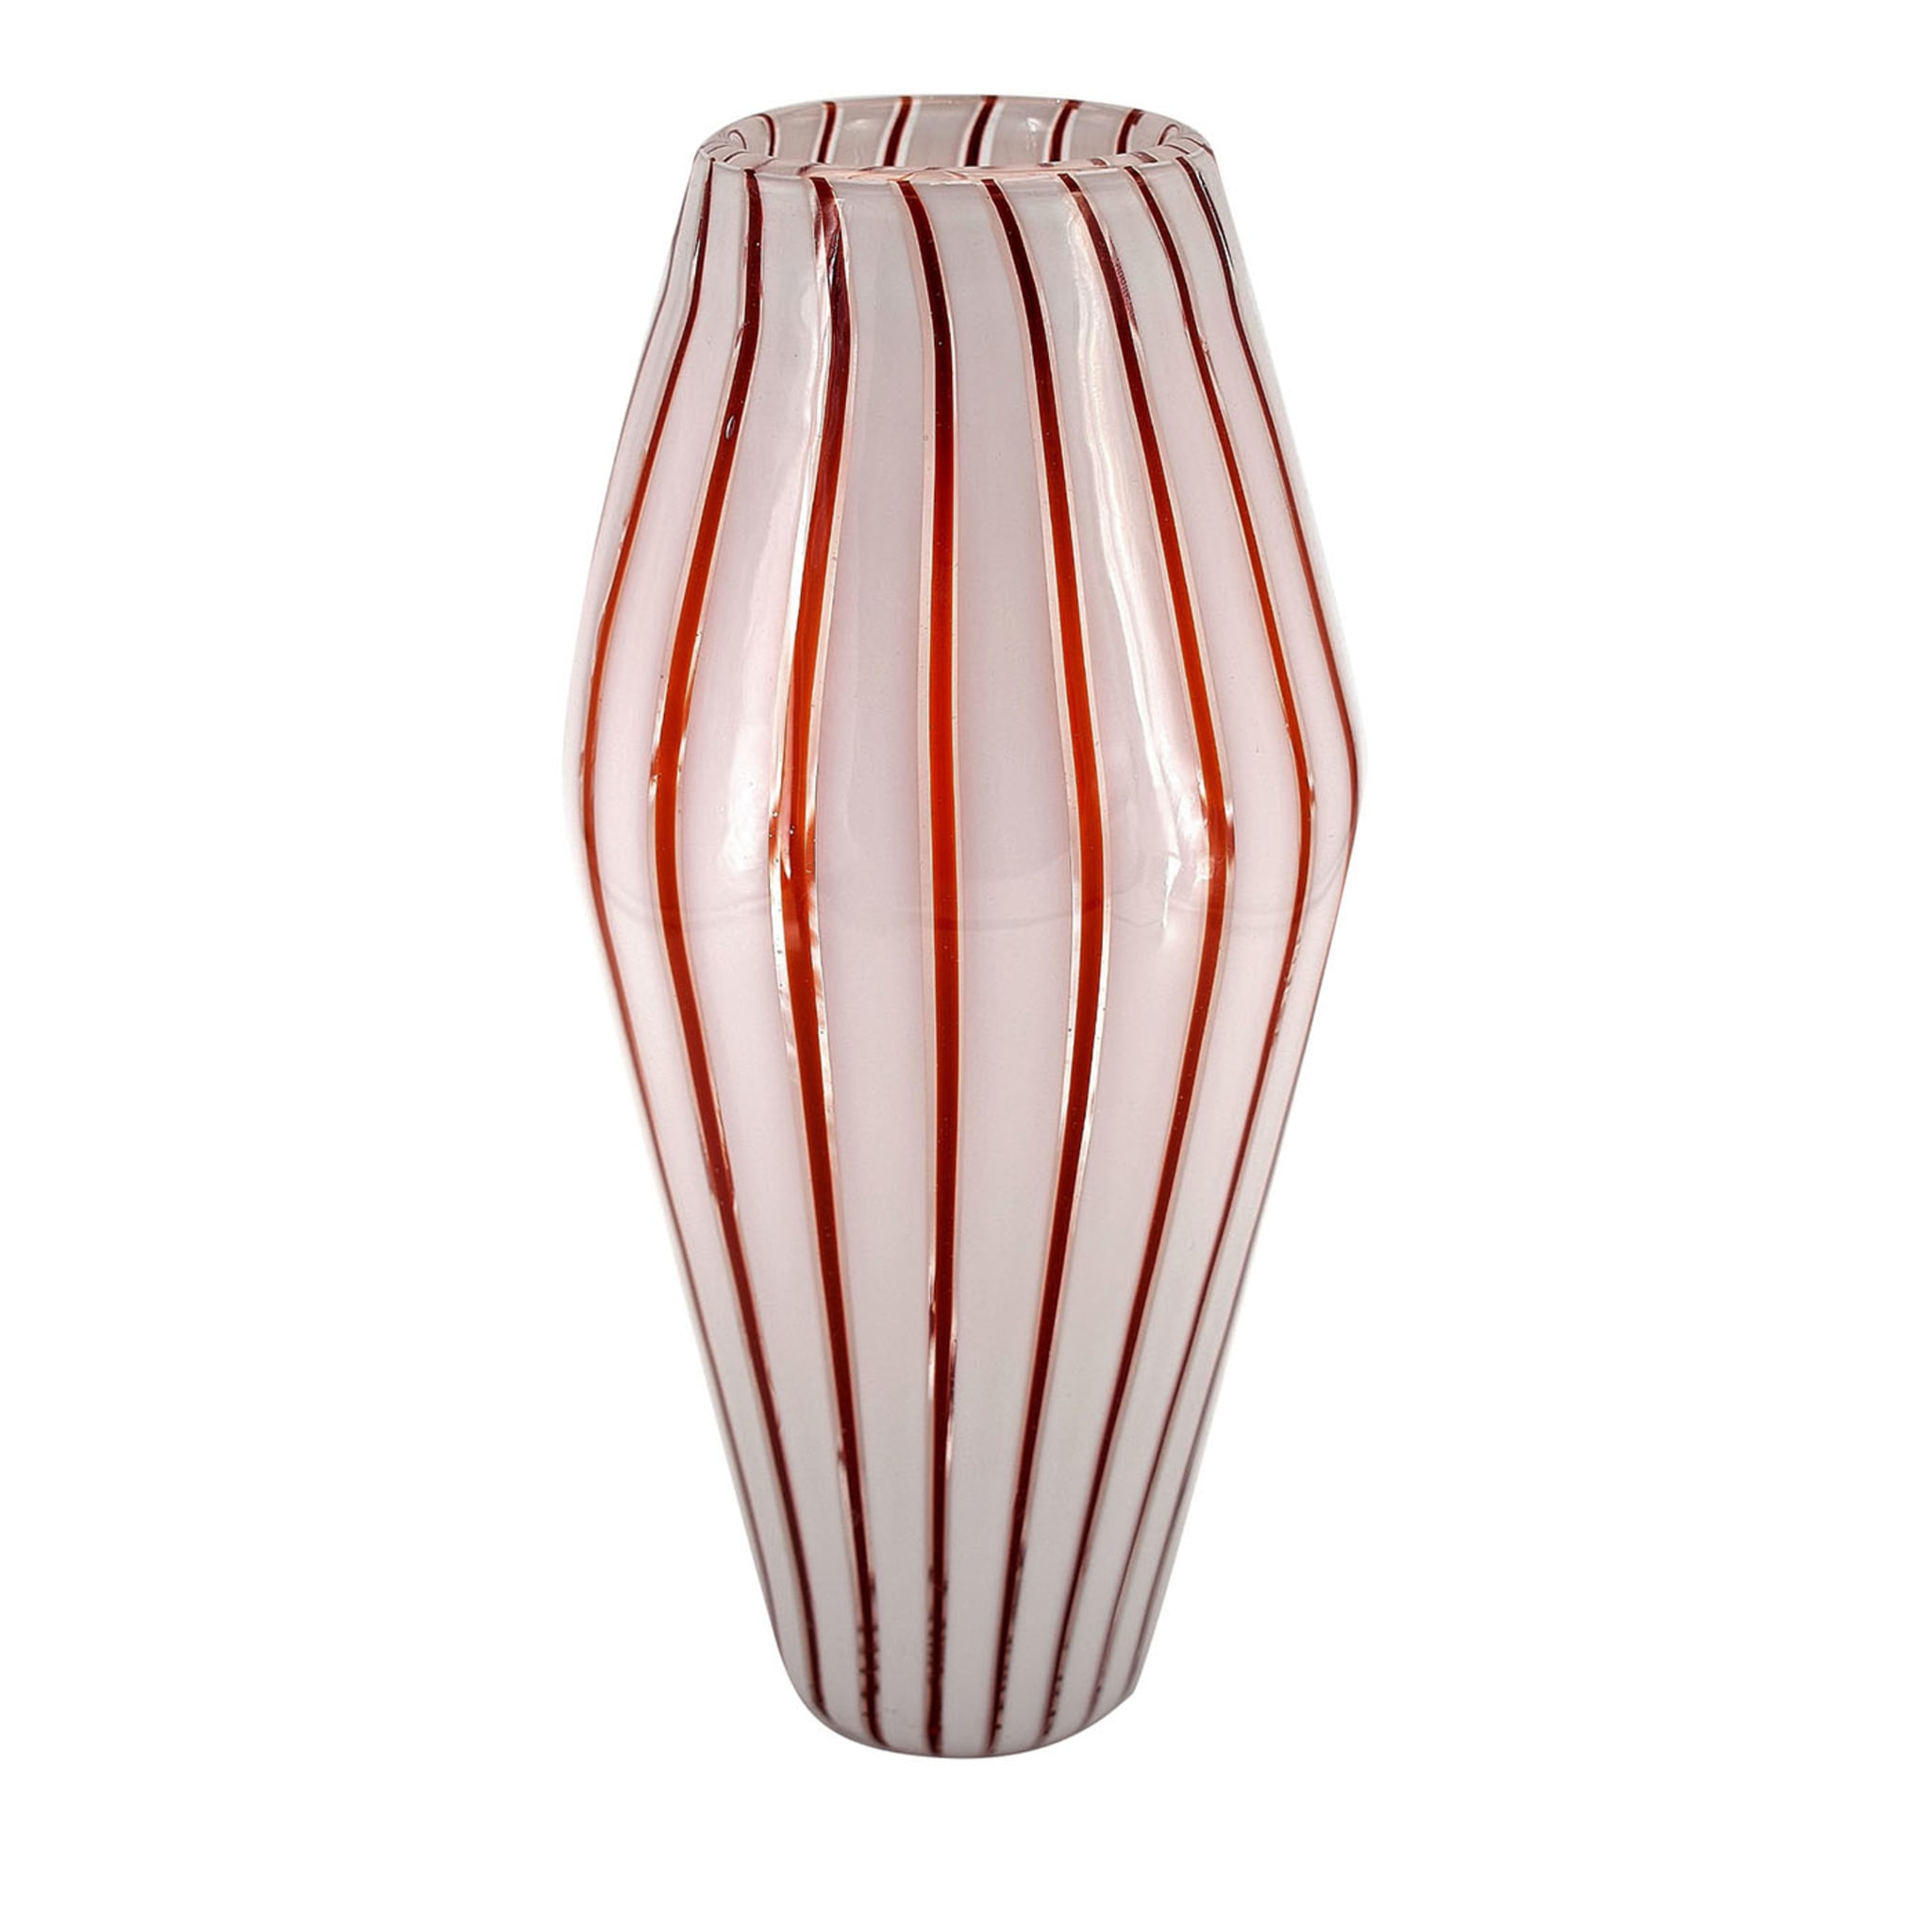 Doppio Cono Striped White & Chestnut Vase - Main view